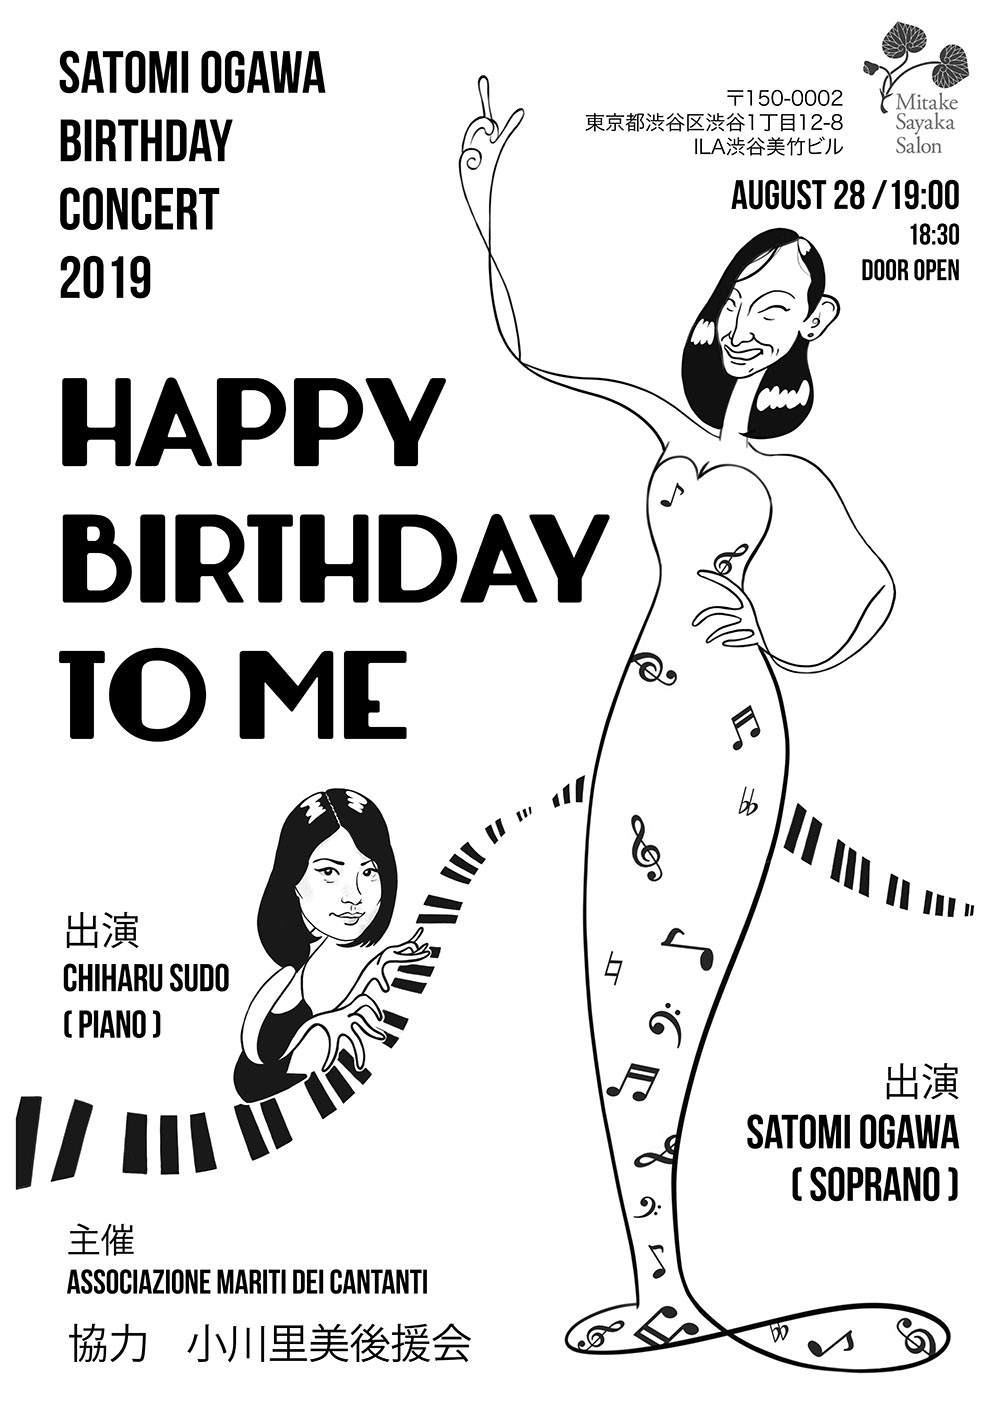 8月28日[貸出] SATOMI OGAWA Birthday Concert 2019 HAPPY BIRTHDAY TO ME